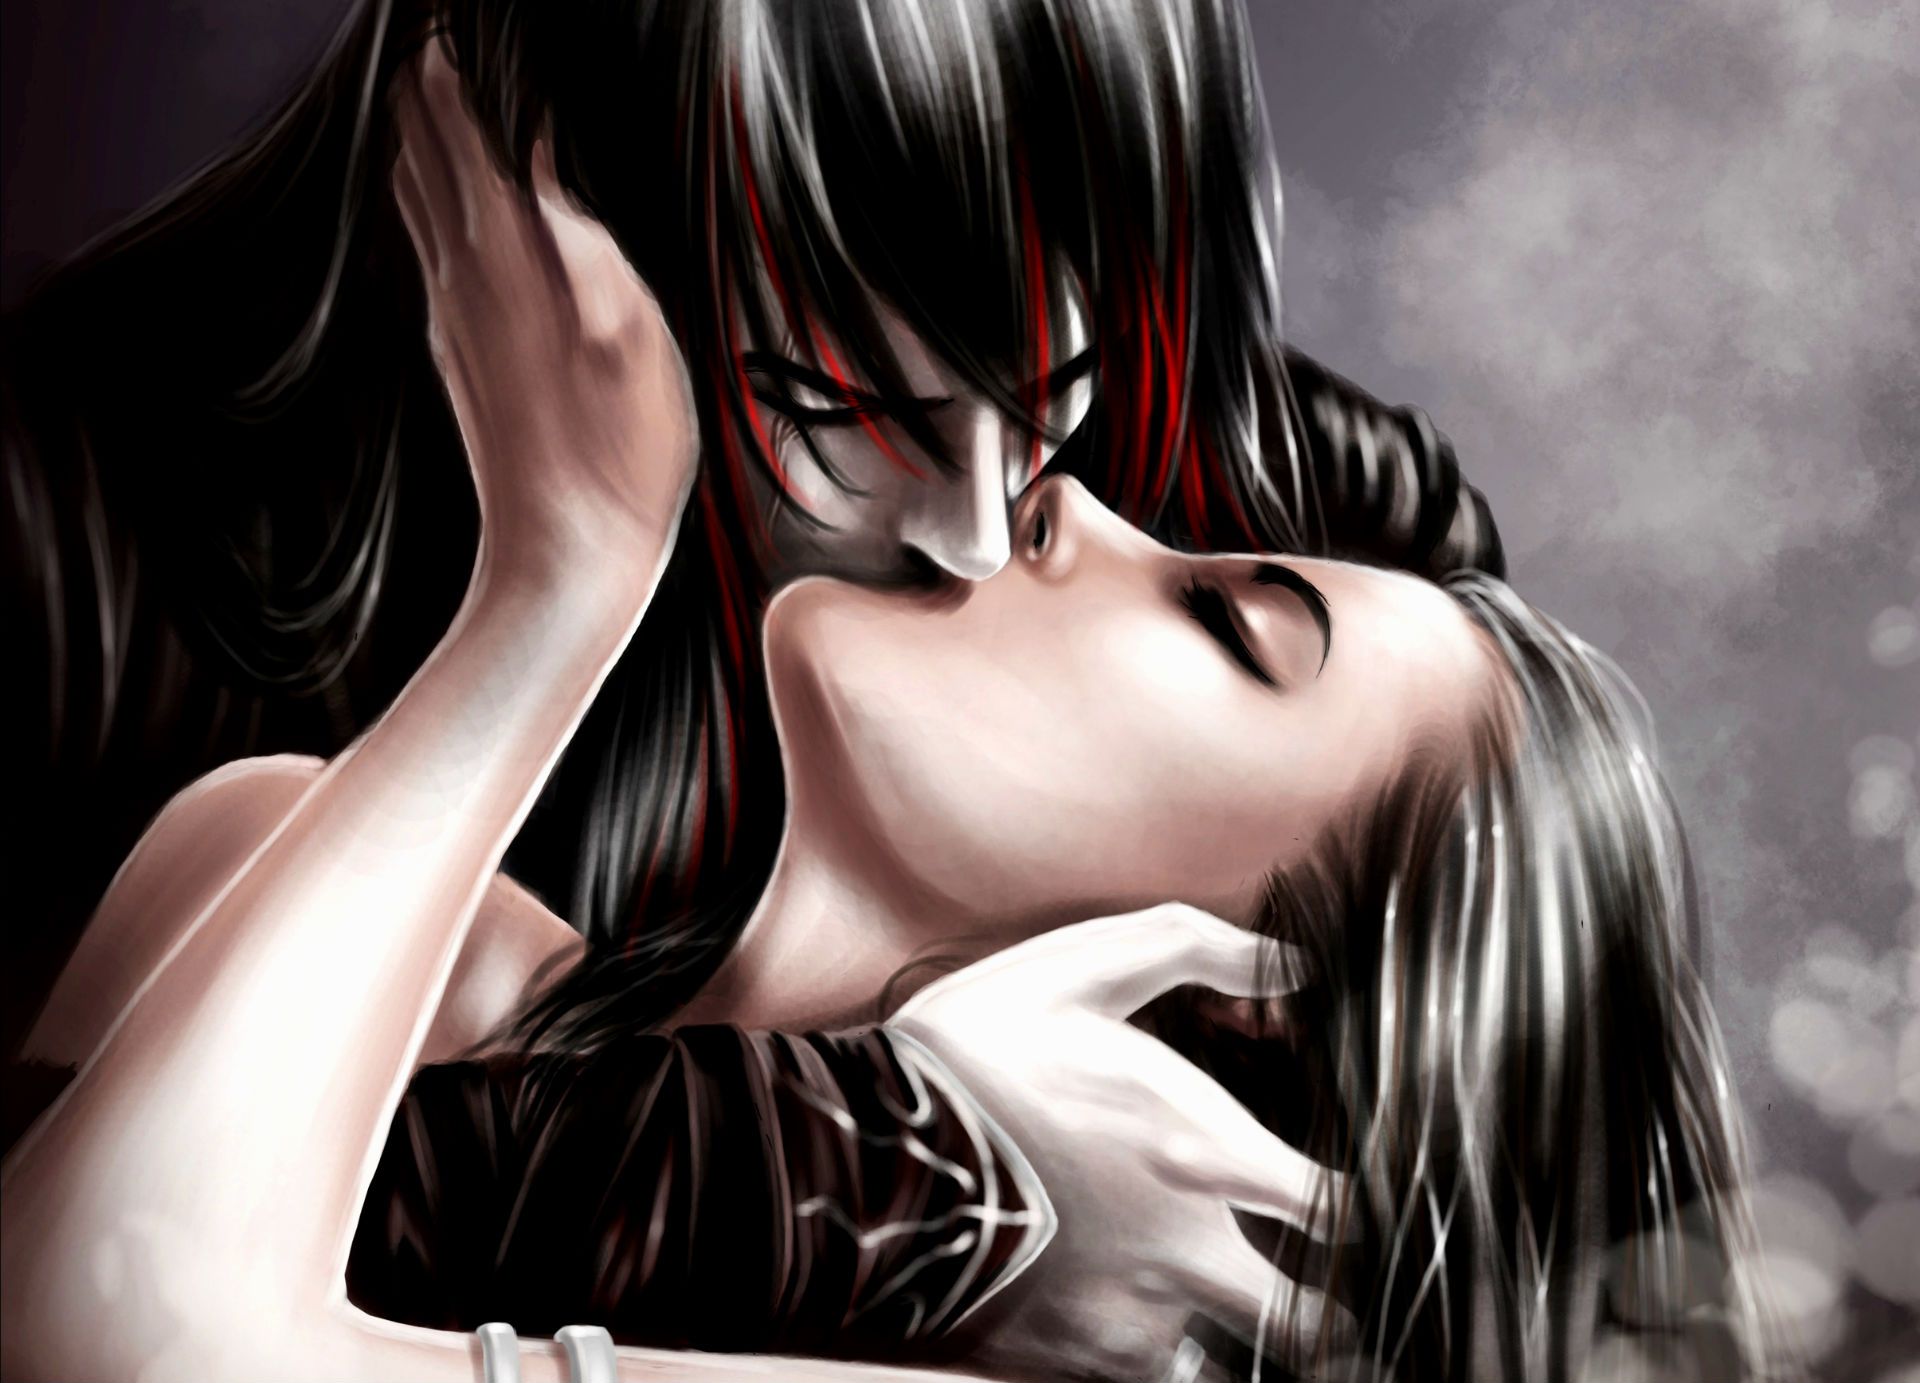 Dark horror fantasy art gothic vampires women men girl boy love romance wallpaperx1383